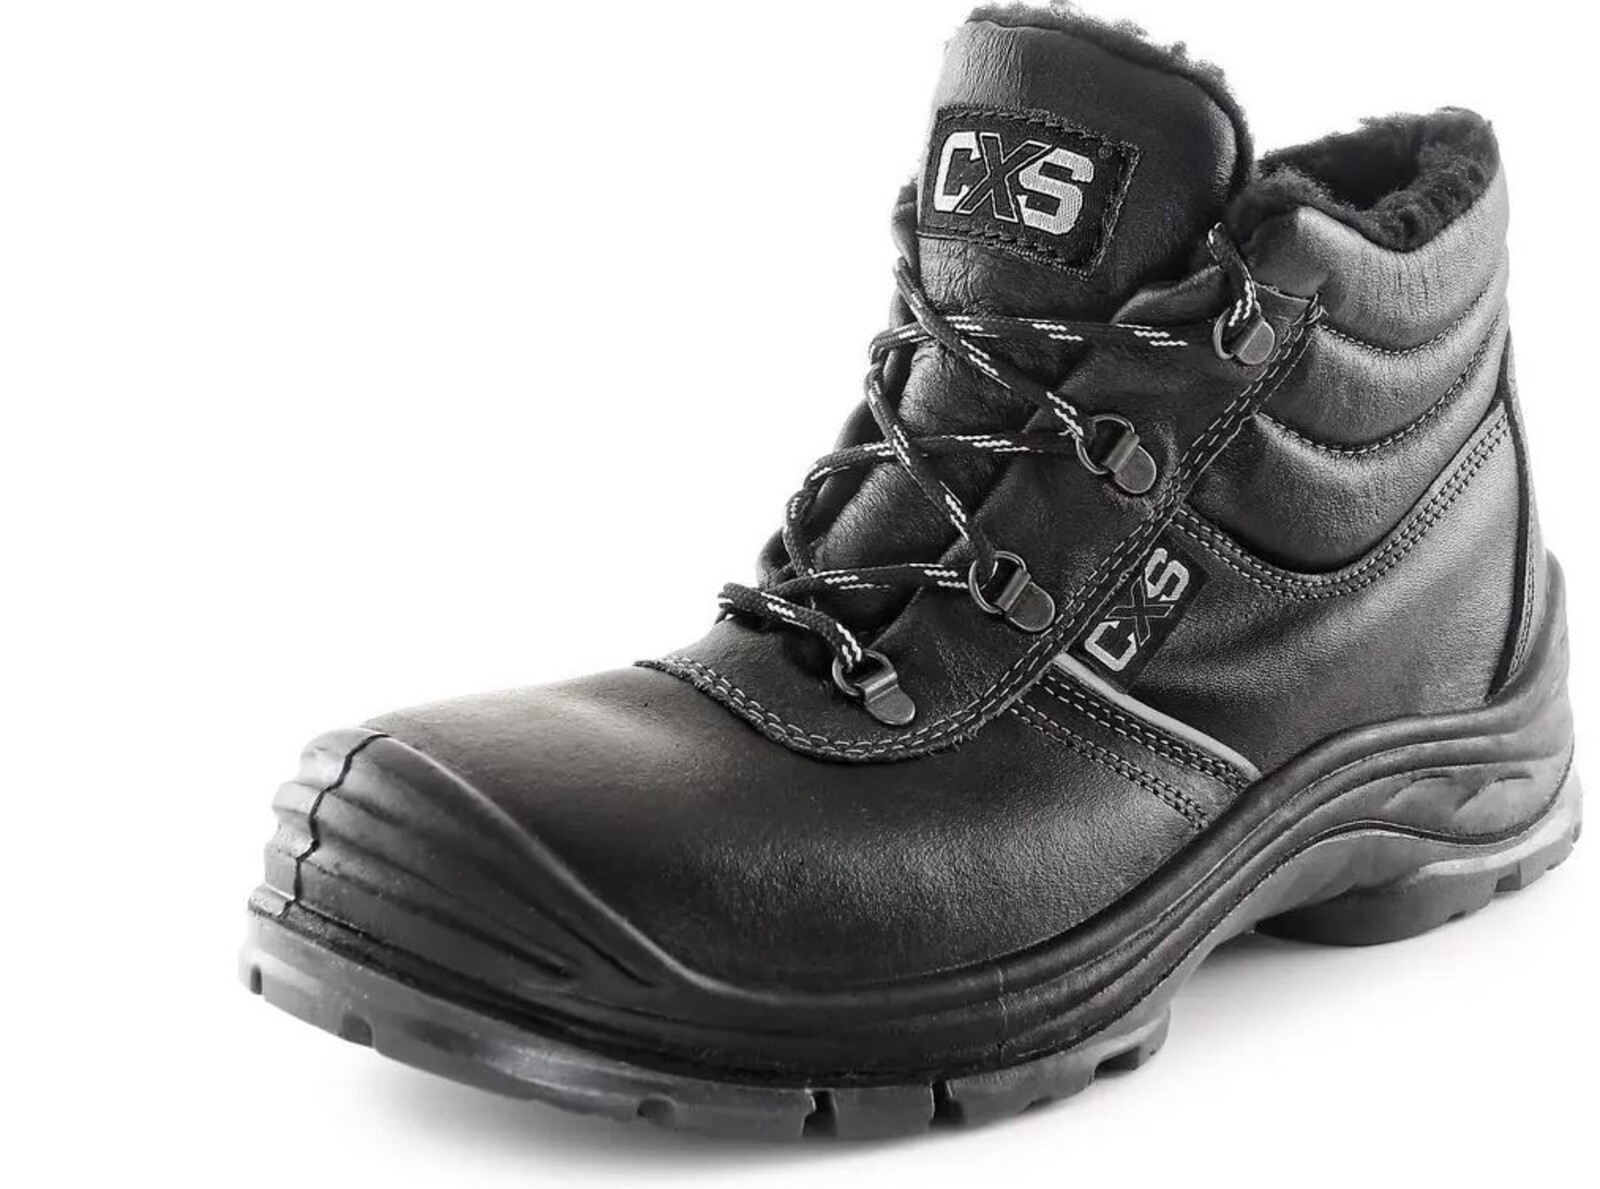 Zimná bezpečnostná členková obuv CXS Safety Steel Nickel S3 - veľkosť: 48, farba: čierna